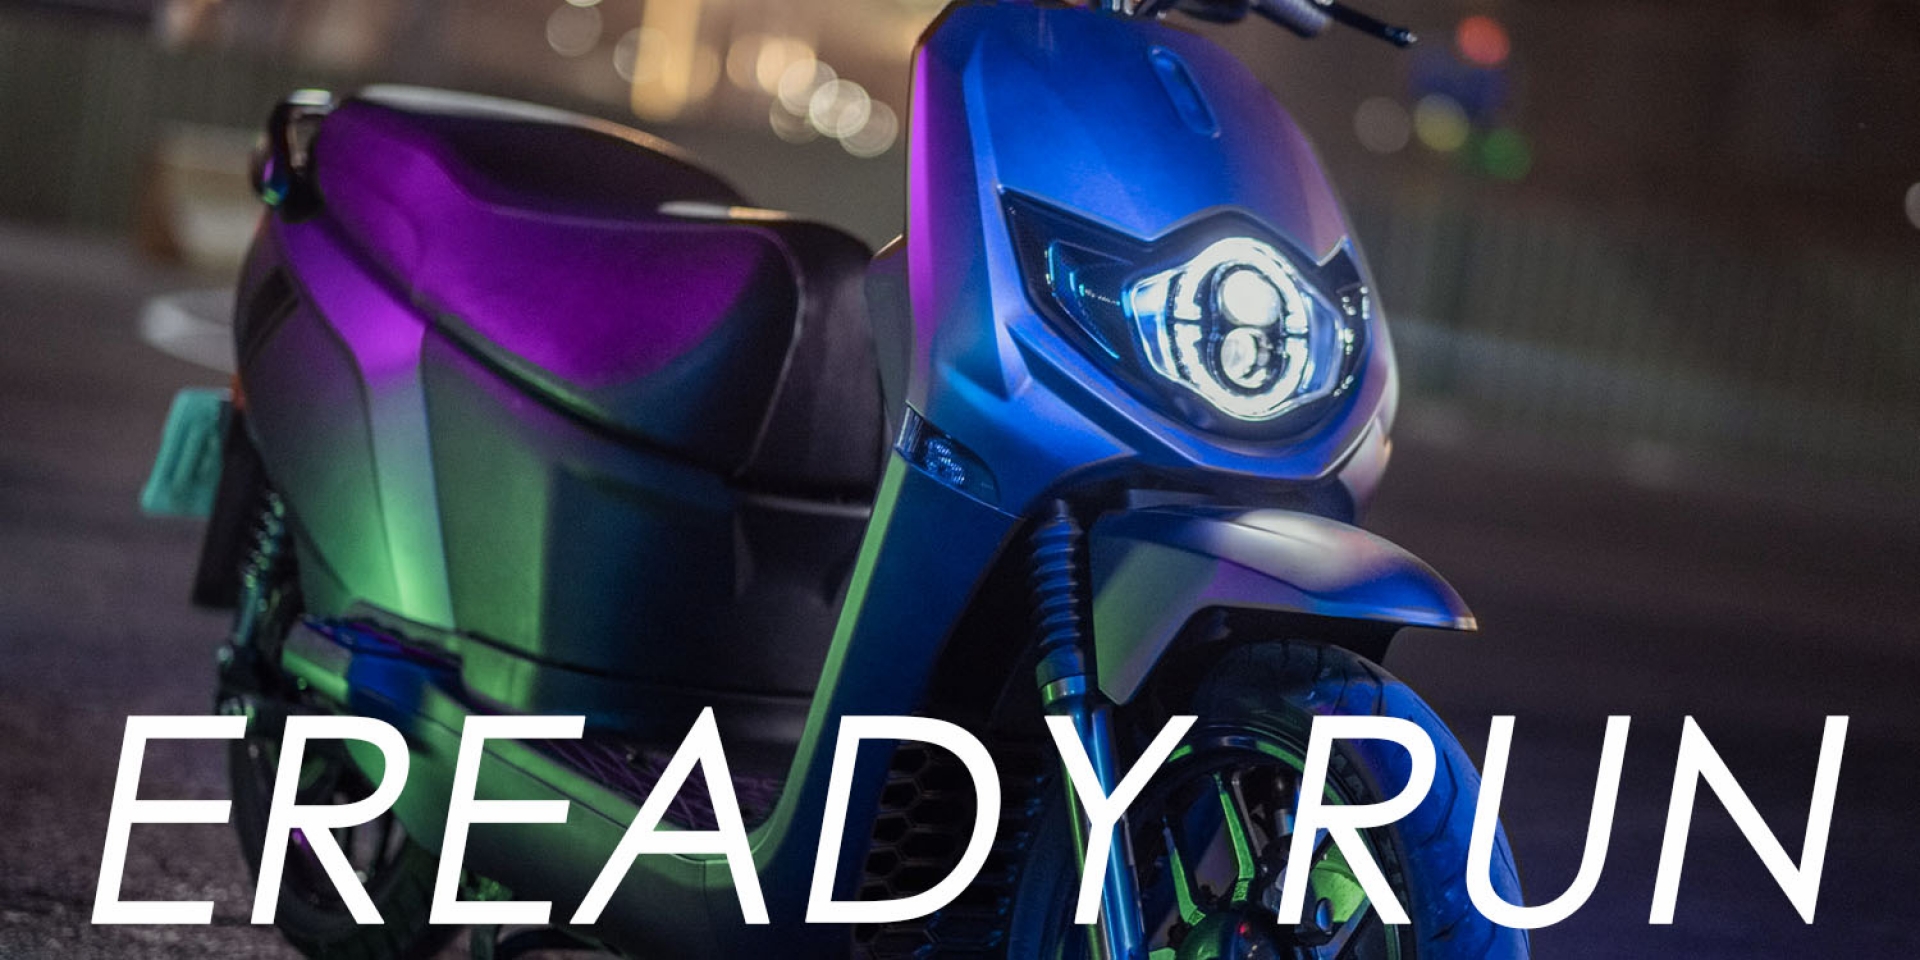 變色烤漆、跑格配備上身！eReady Run 魔綠幻紫 93800元正式發表